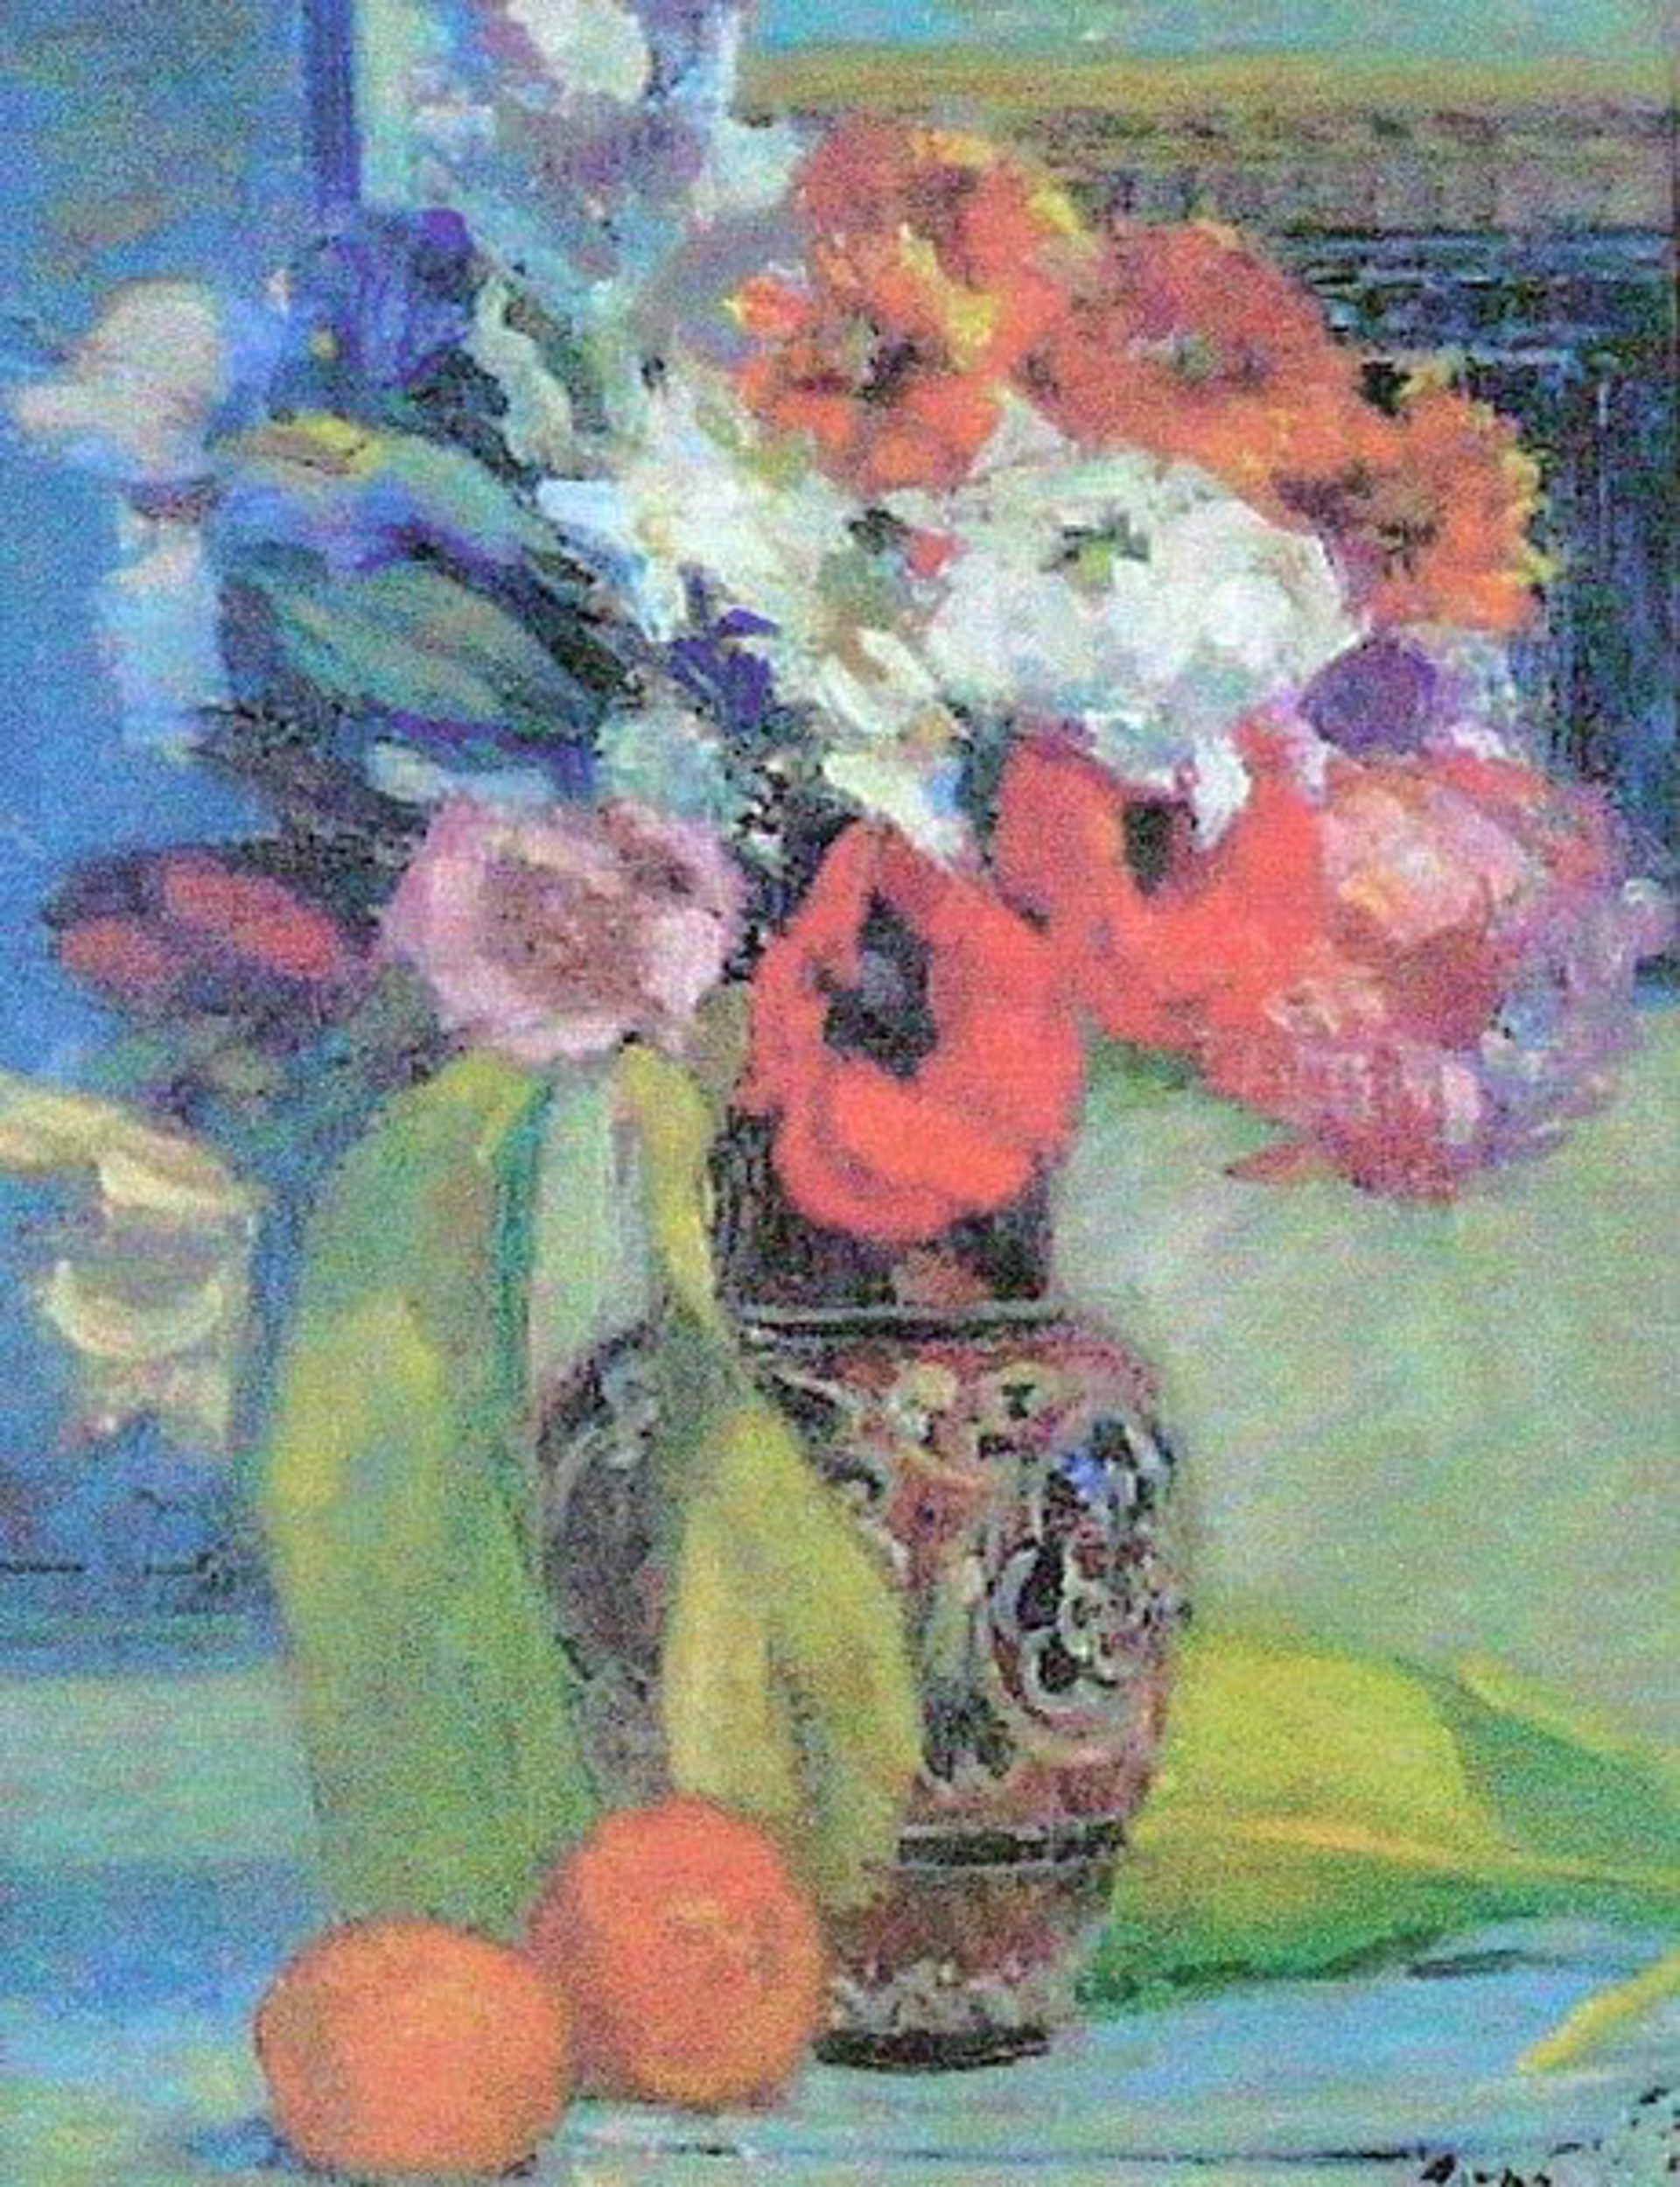 Flowers in a Brown Vase by Vladimir Gorb